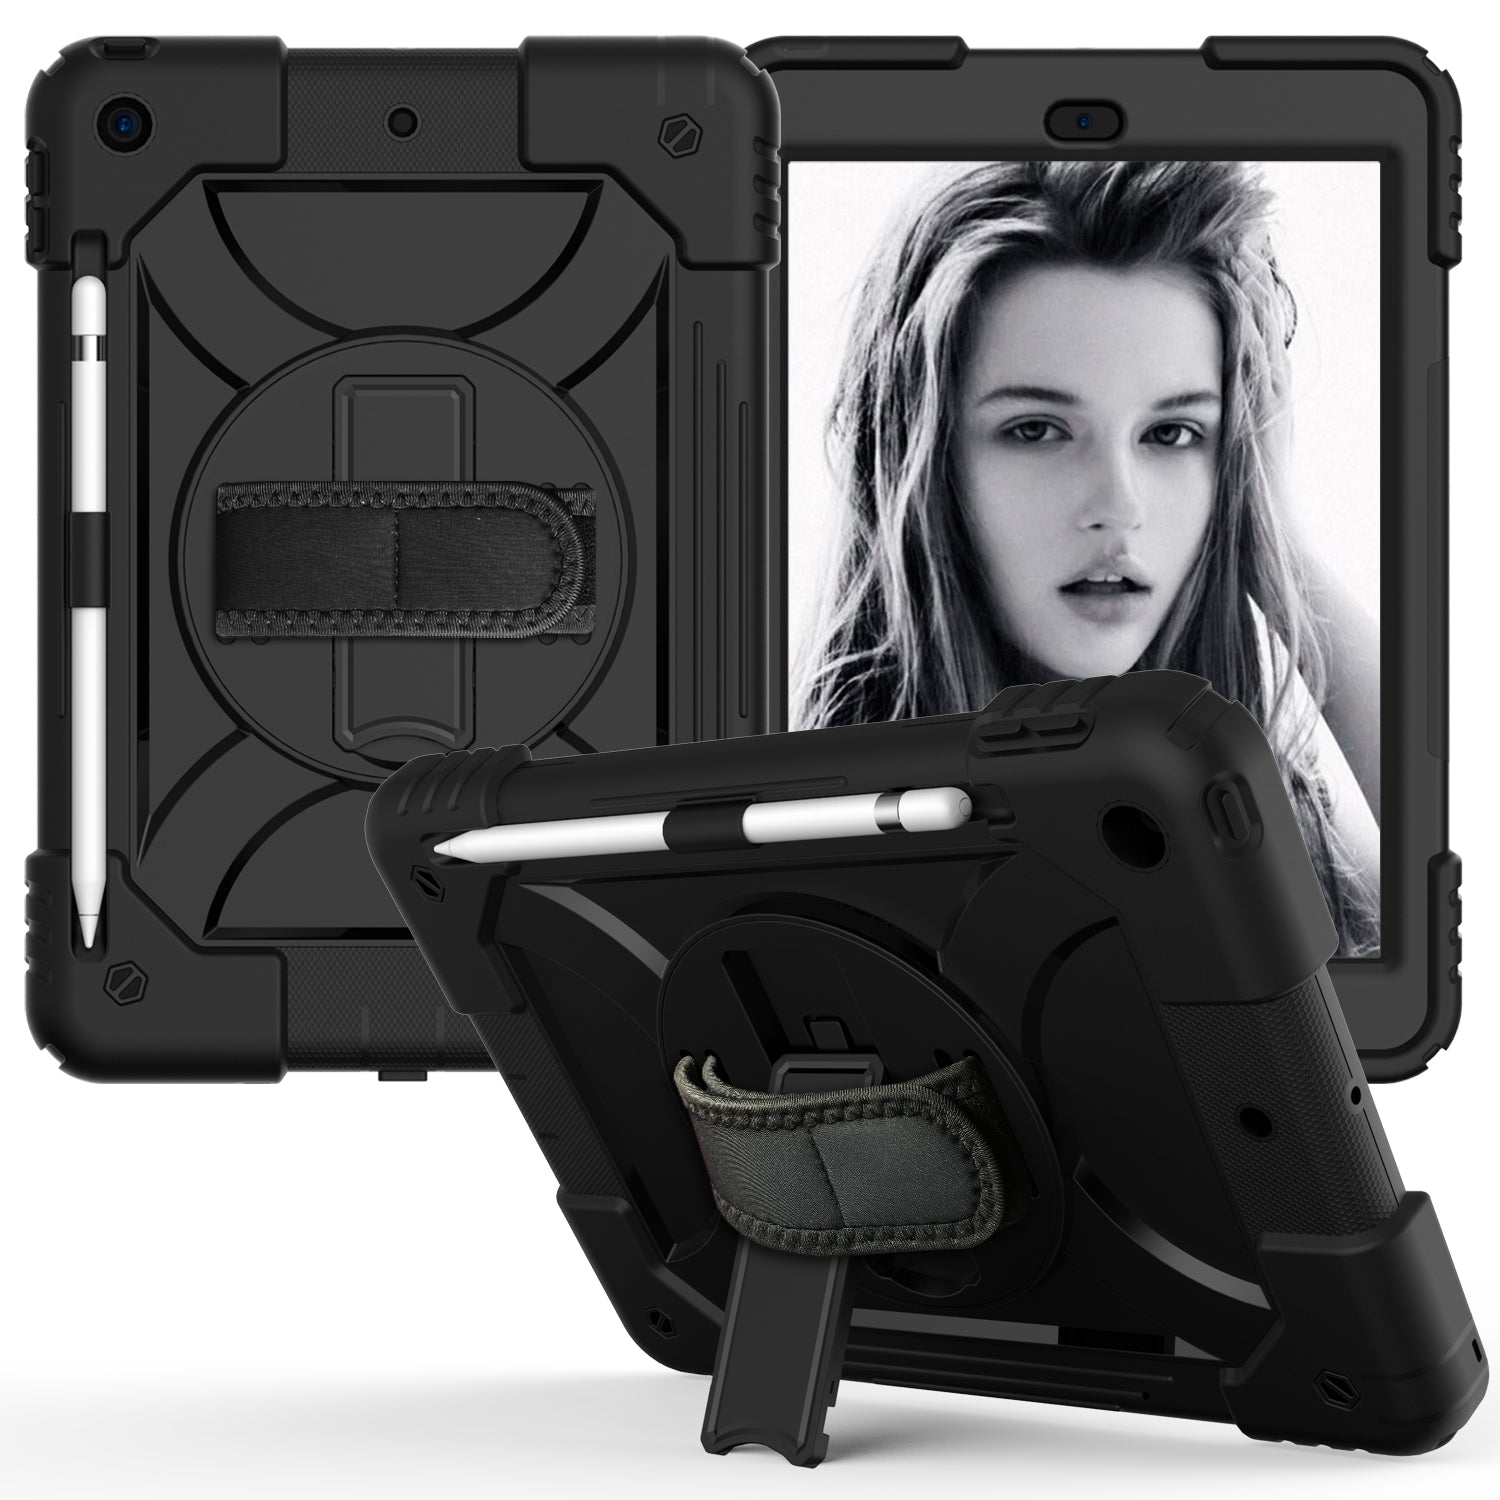 Shockproof Hard iPad Case 9.7 inch Black